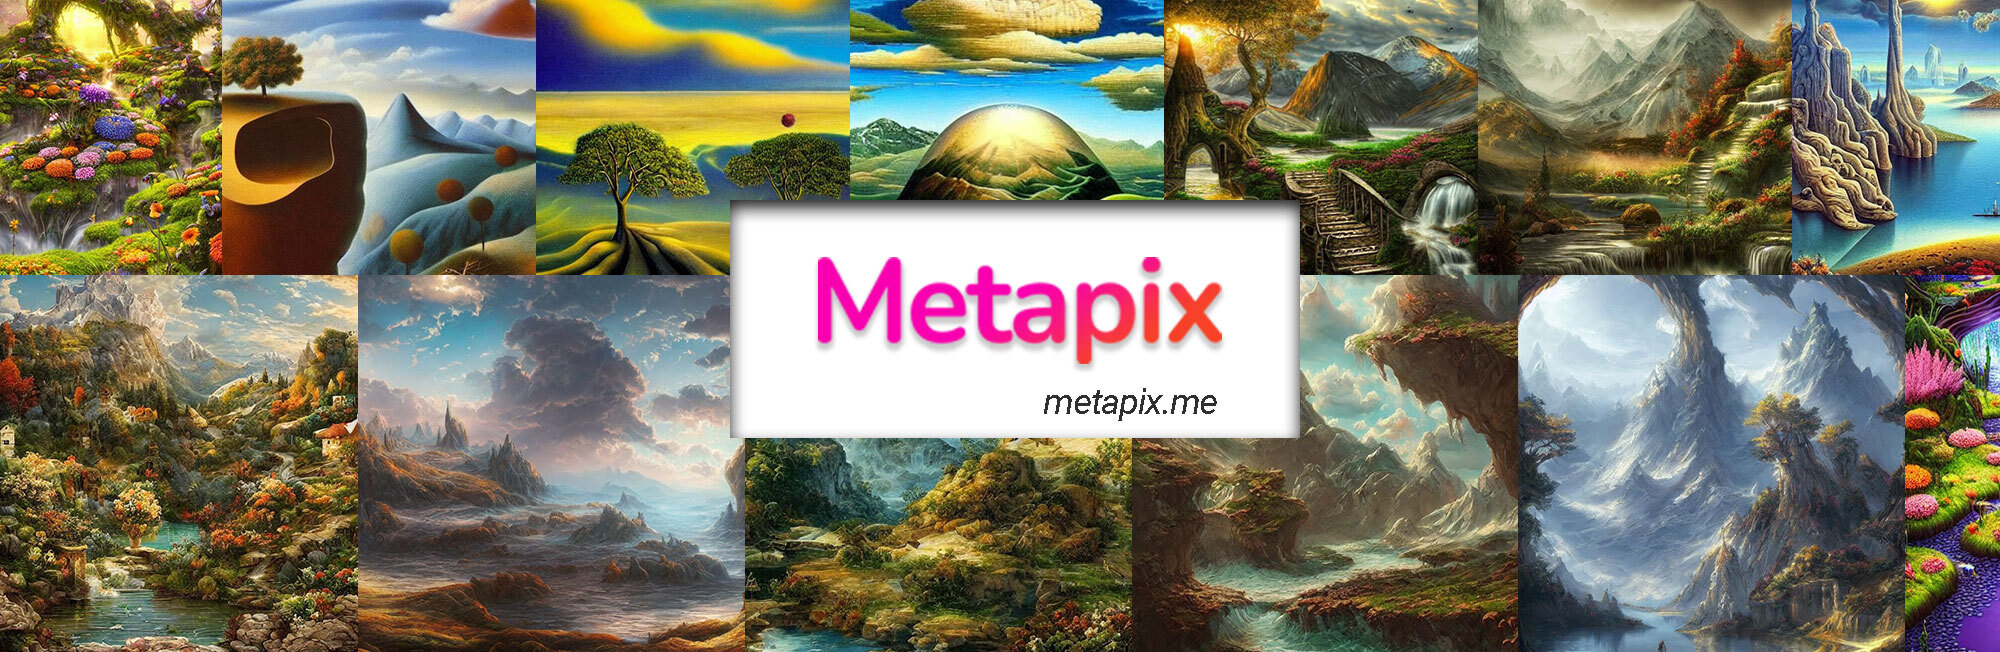 Metapix_ banner